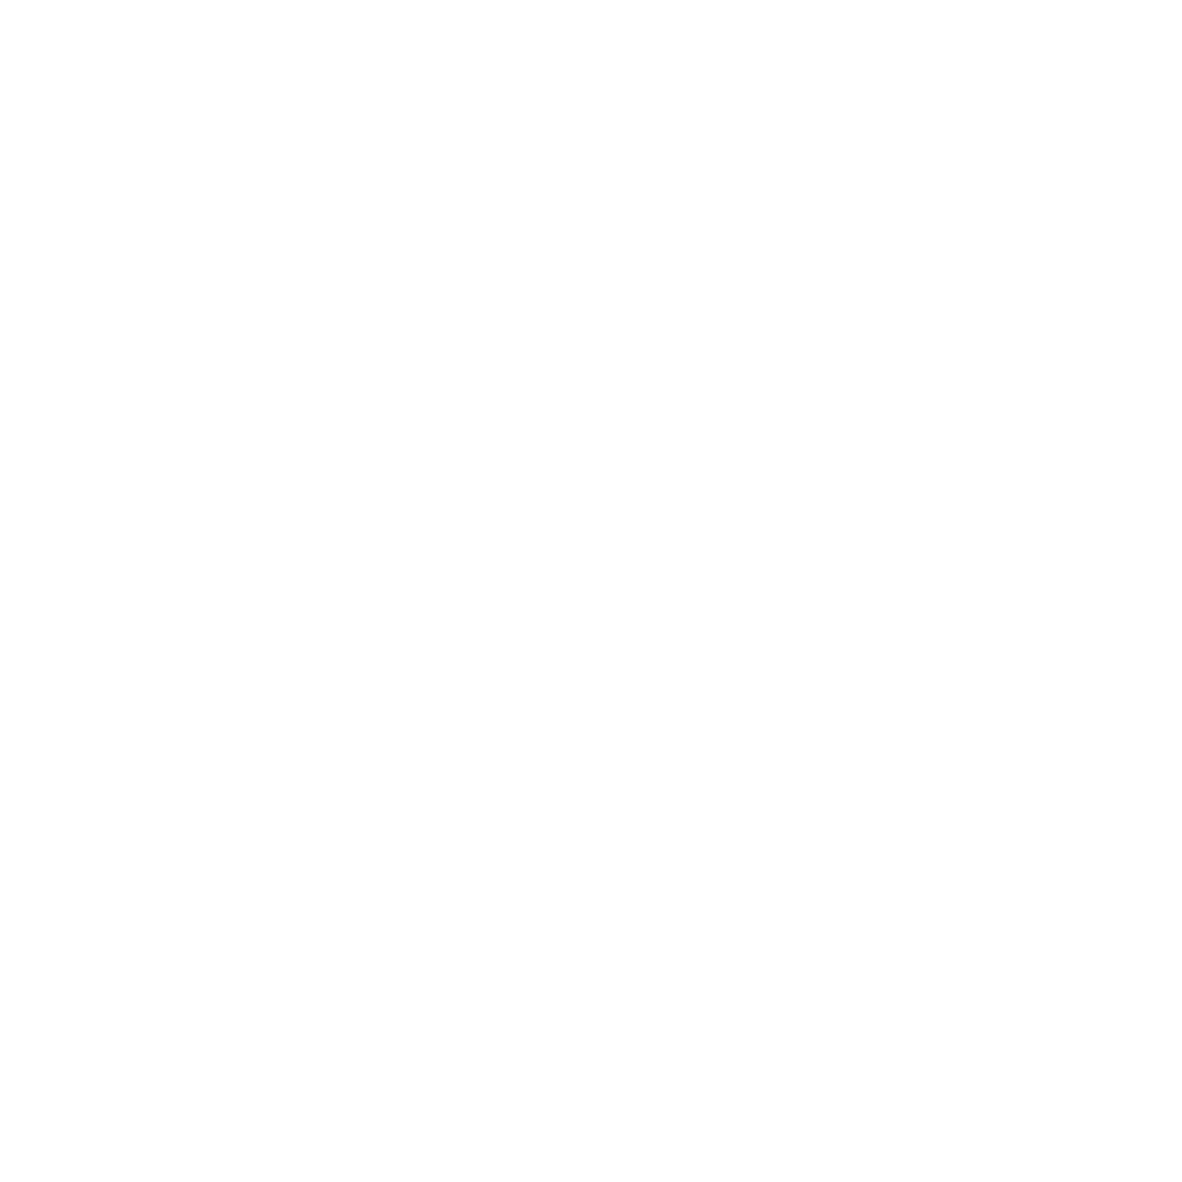 LOGO Metro white